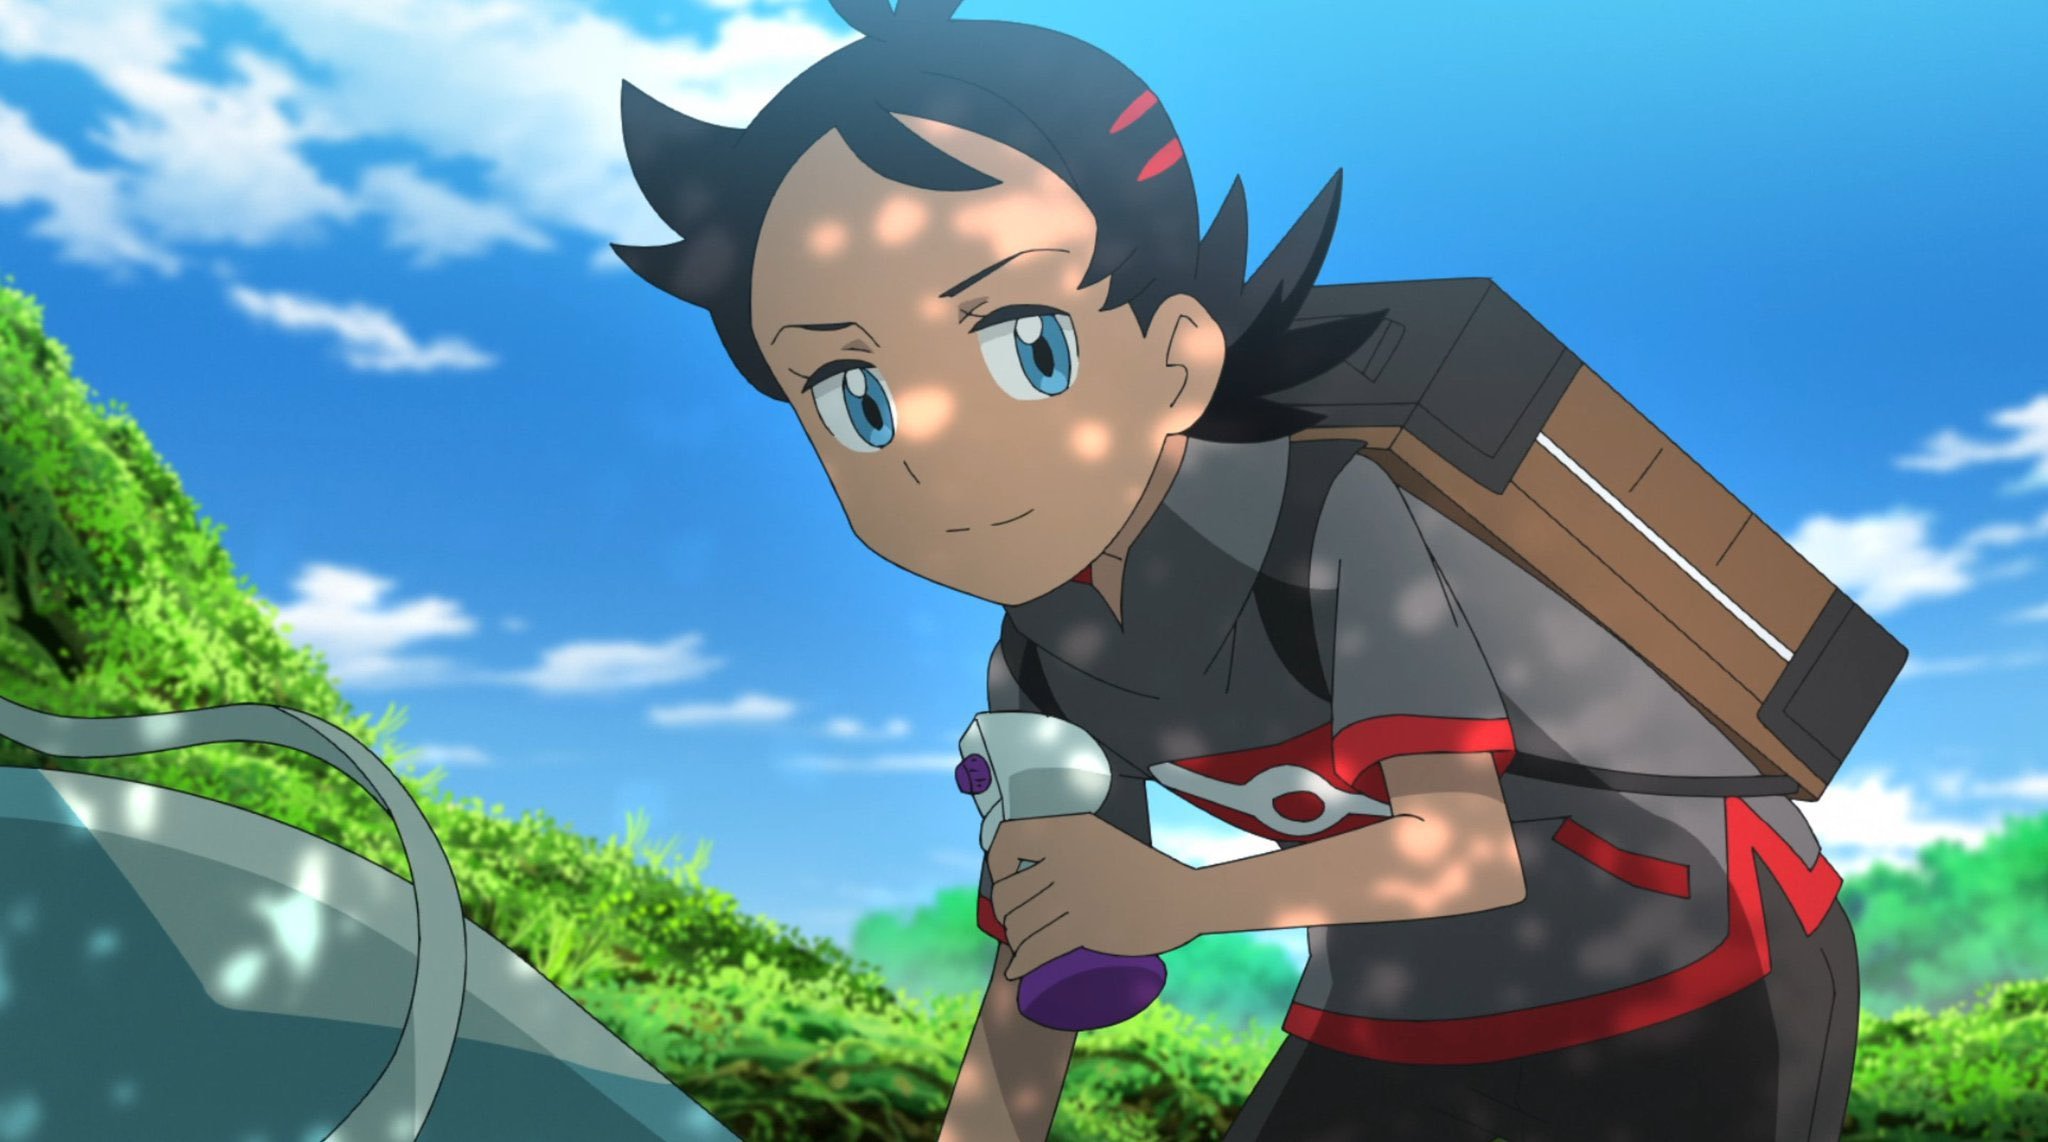 Pokémon Anime VN - Bửu bối thần kì - Goh sẽ thay thế Takeshi khi gặp gỡ bộ  3 này! 🥺🥺 Vậy… mục đích đưa Takeshi return là gì vậy??? | Facebook